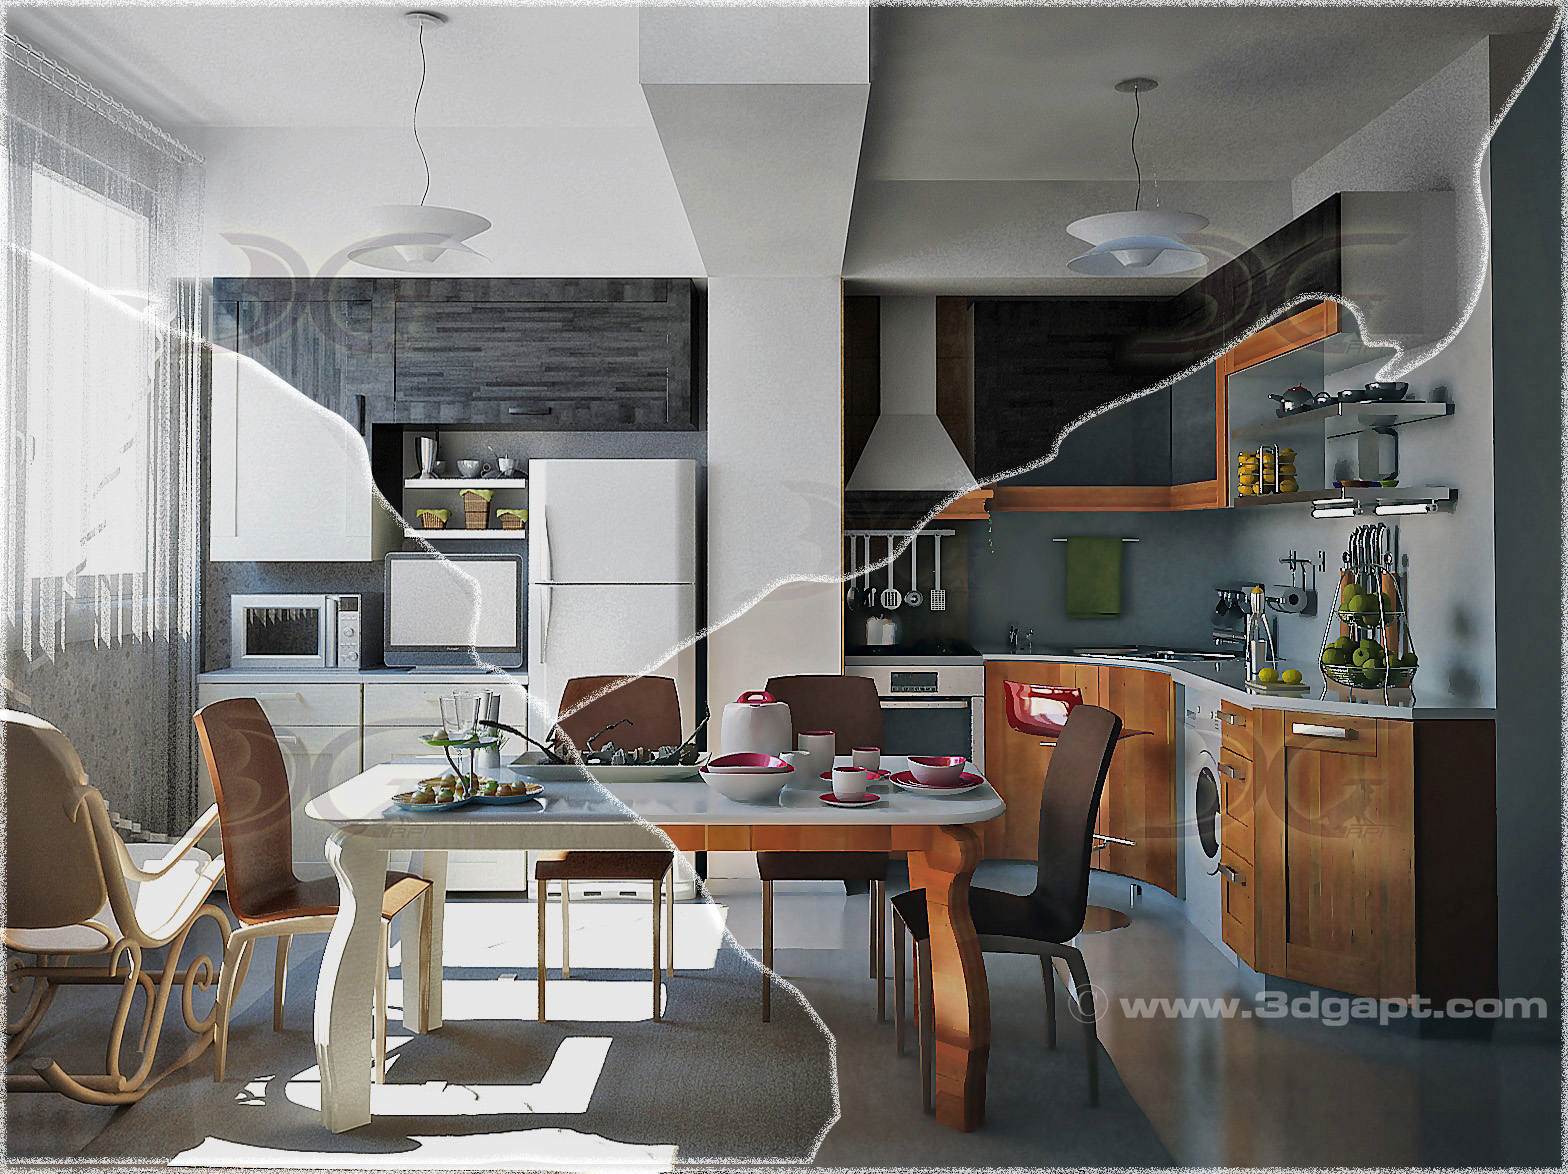 architecture interior kitchen-3versions 1